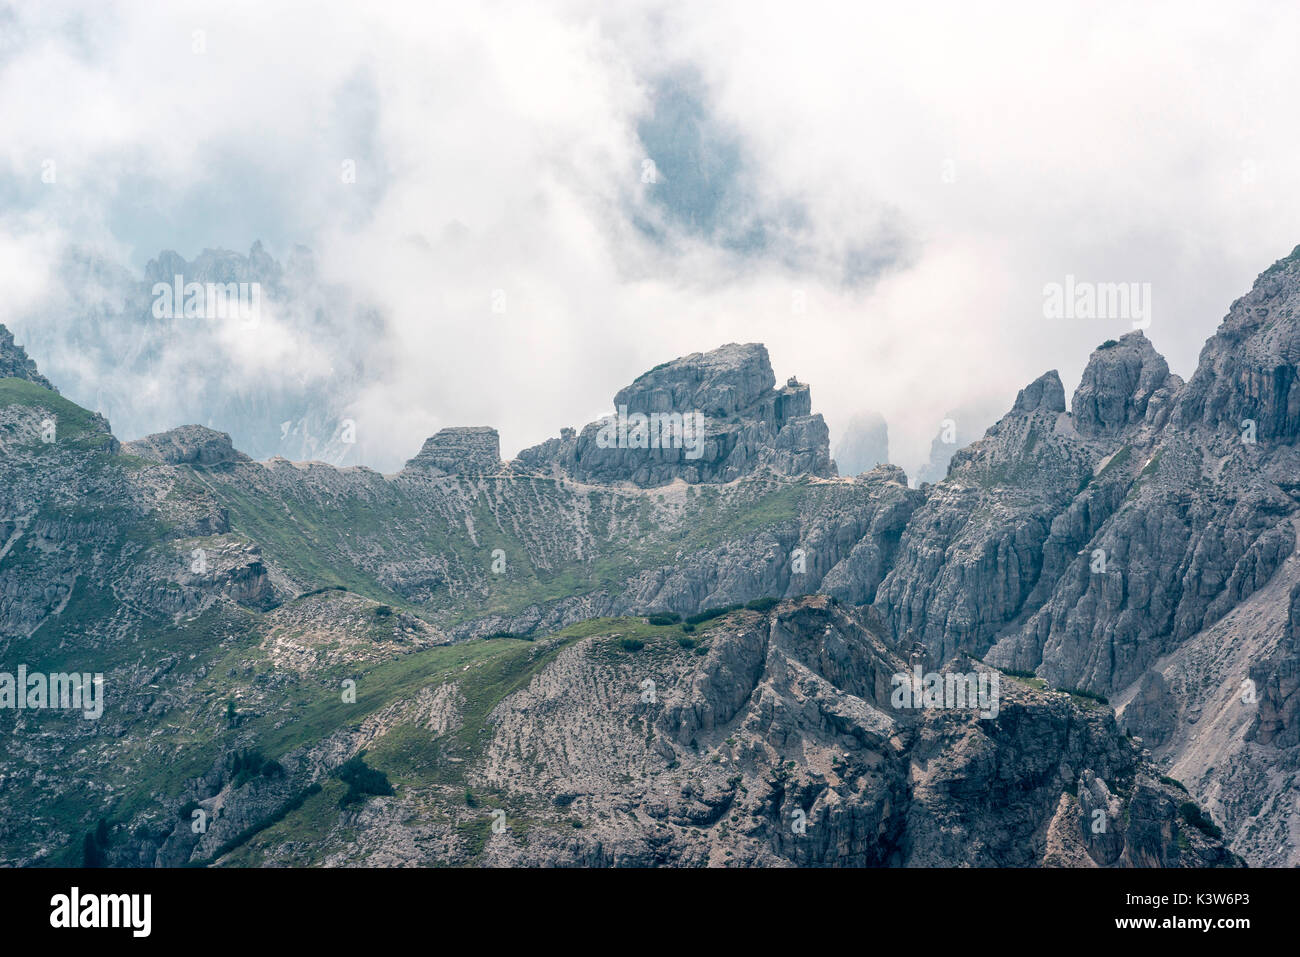 Cadini in the clouds,Auronzo,Cadore,dolomites,alps,veneto,italy Stock Photo